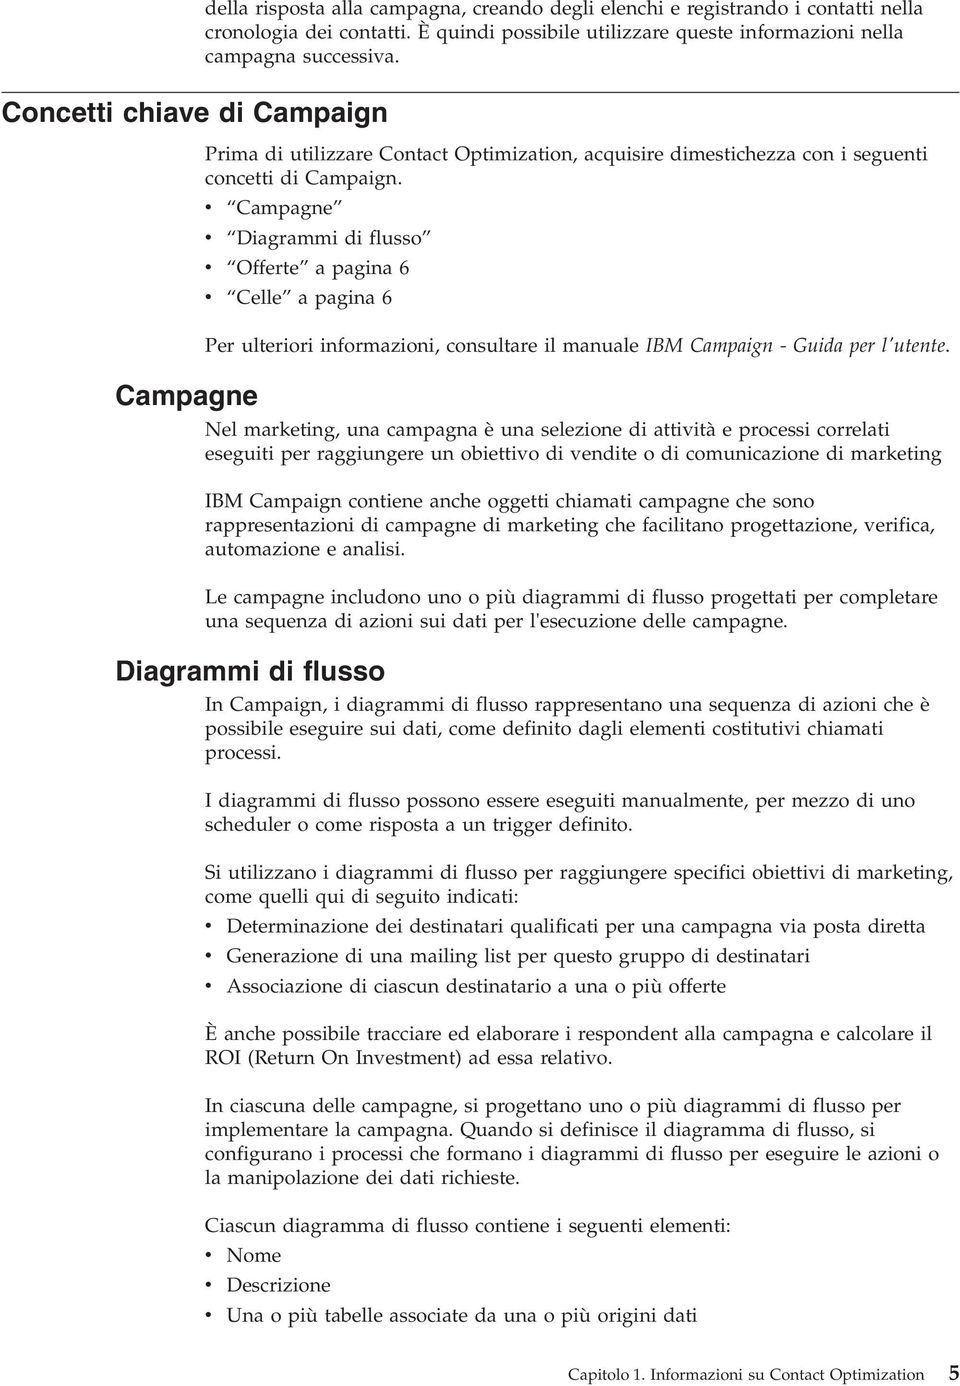 Campagne Diagrammi di flusso Offerte a pagina 6 Celle a pagina 6 Per ulteriori informazioni, consultare il manuale IBM Campaign - Guida per l'utente.